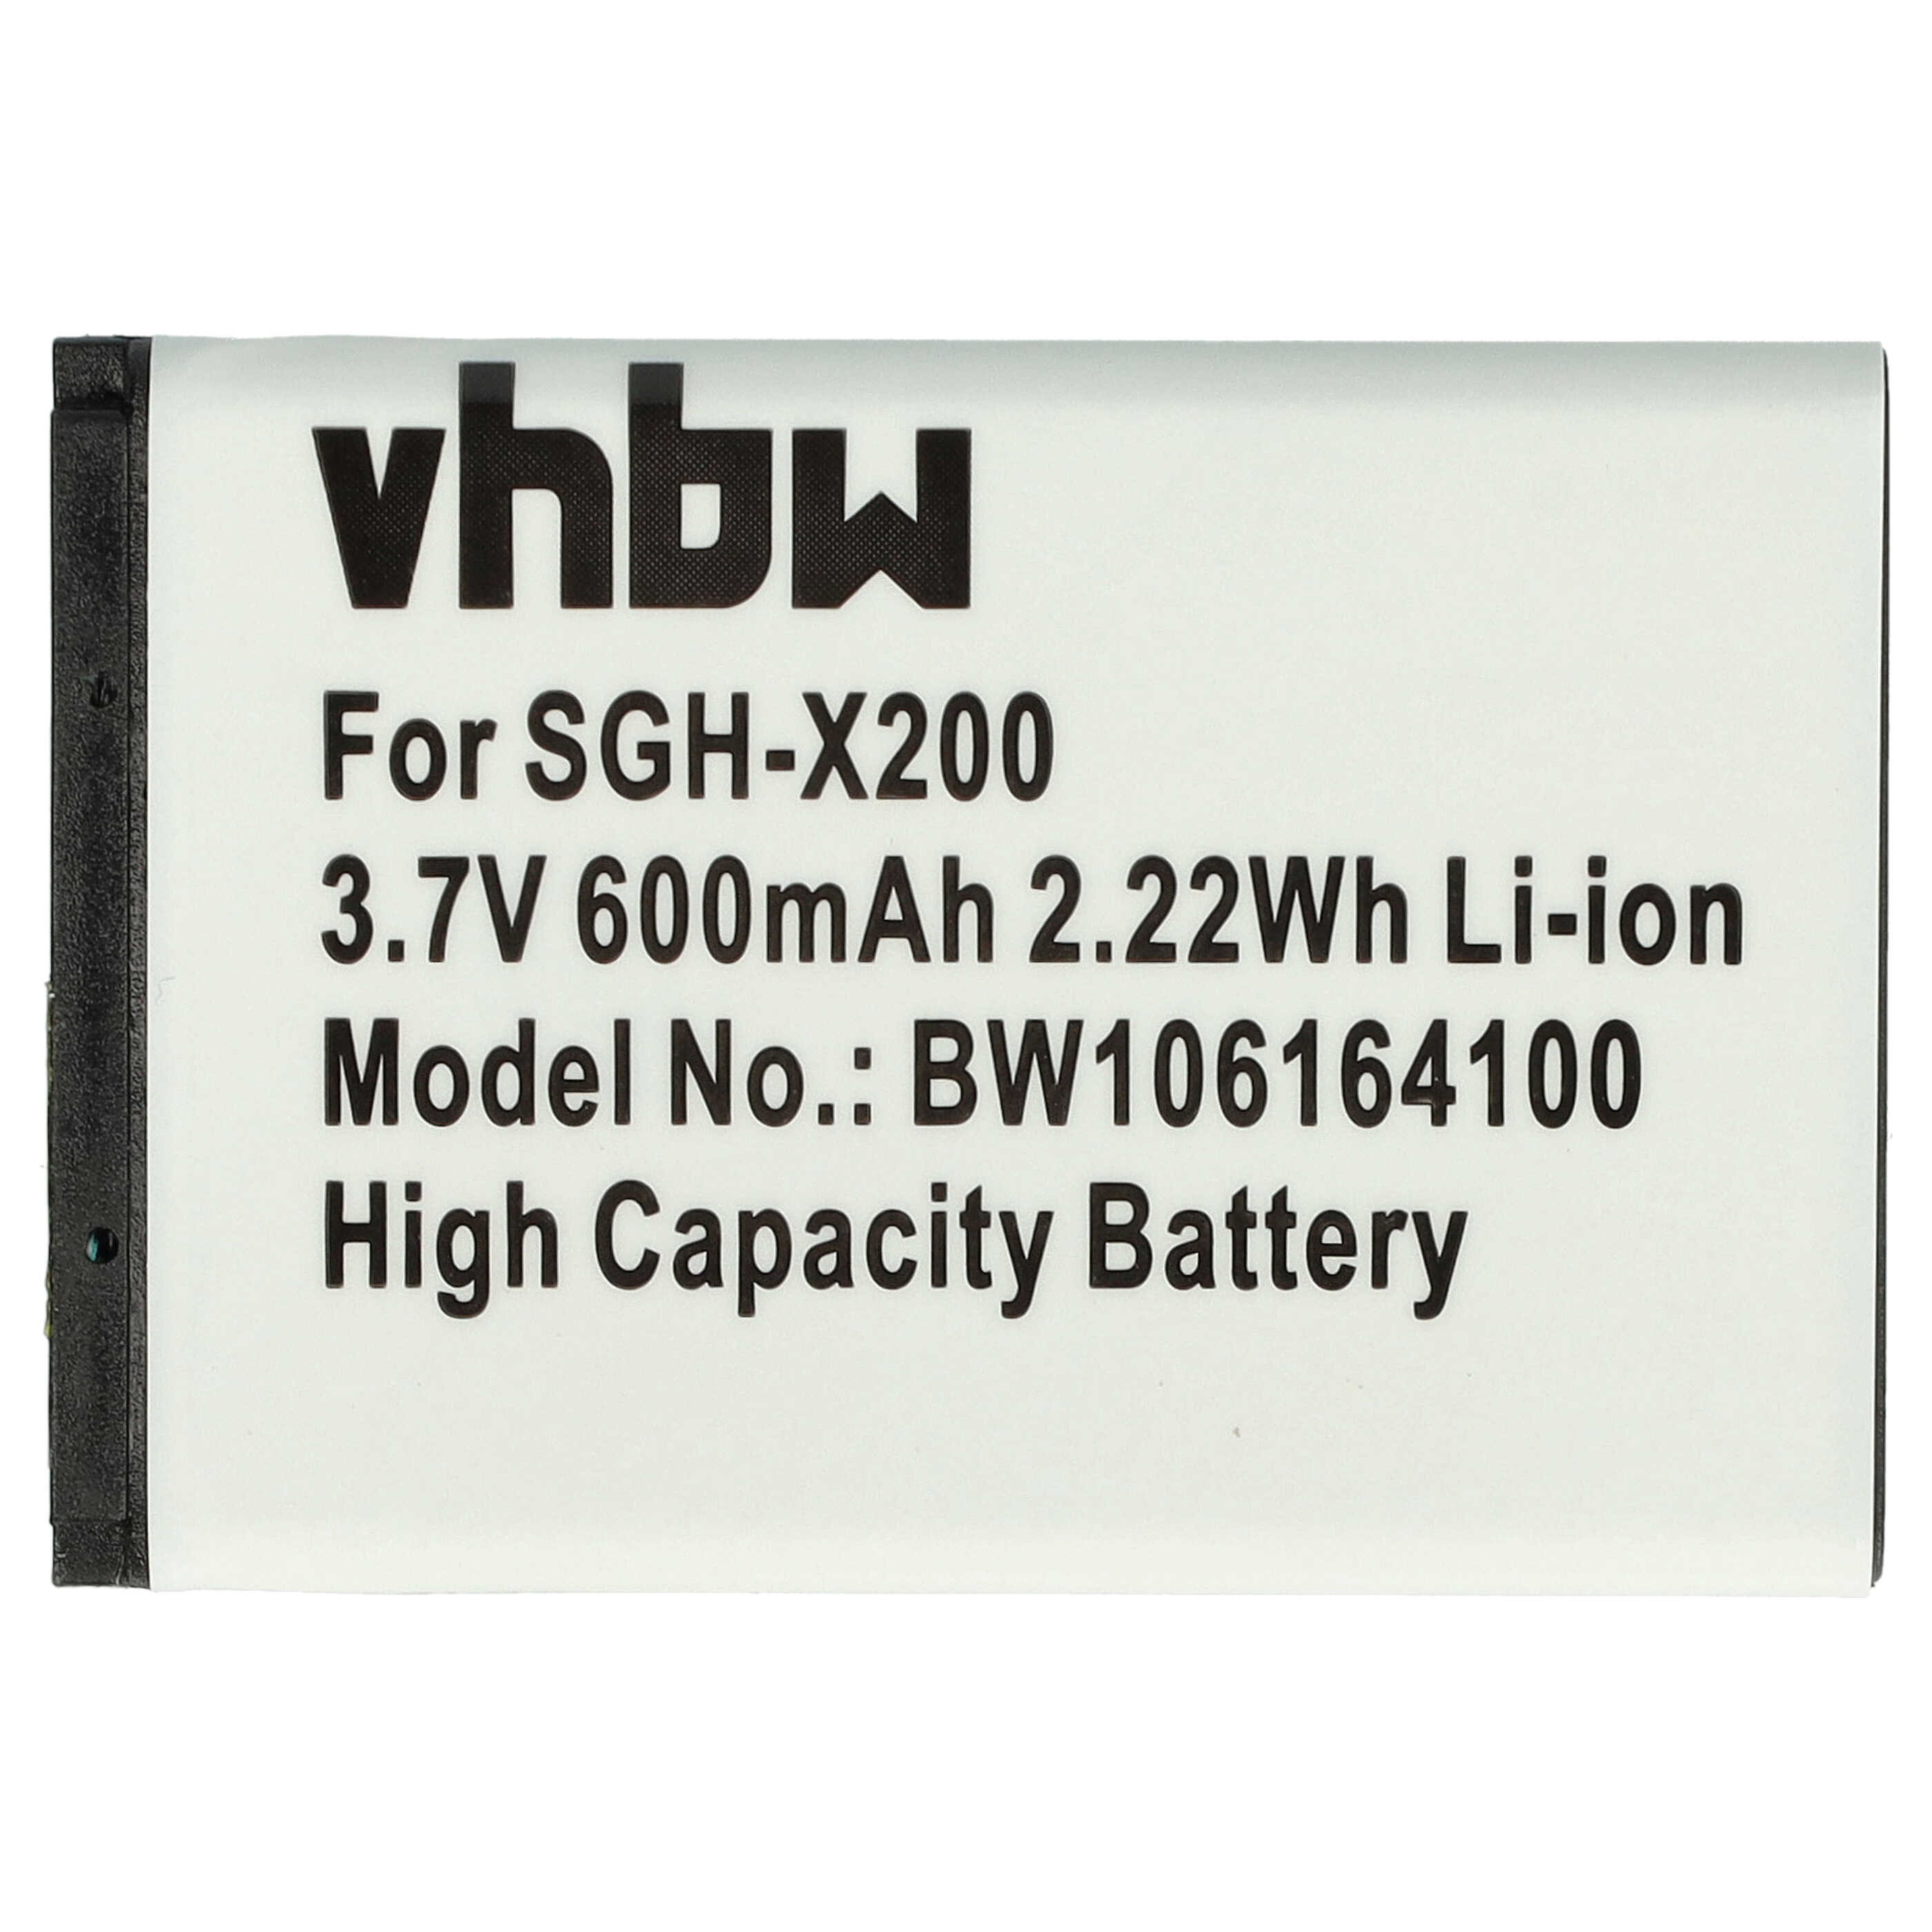 Batterie remplace Samsung AB043446LA, AB043446BC, AB043446BE pour téléphone portable - 600mAh, 3,7V, Li-ion